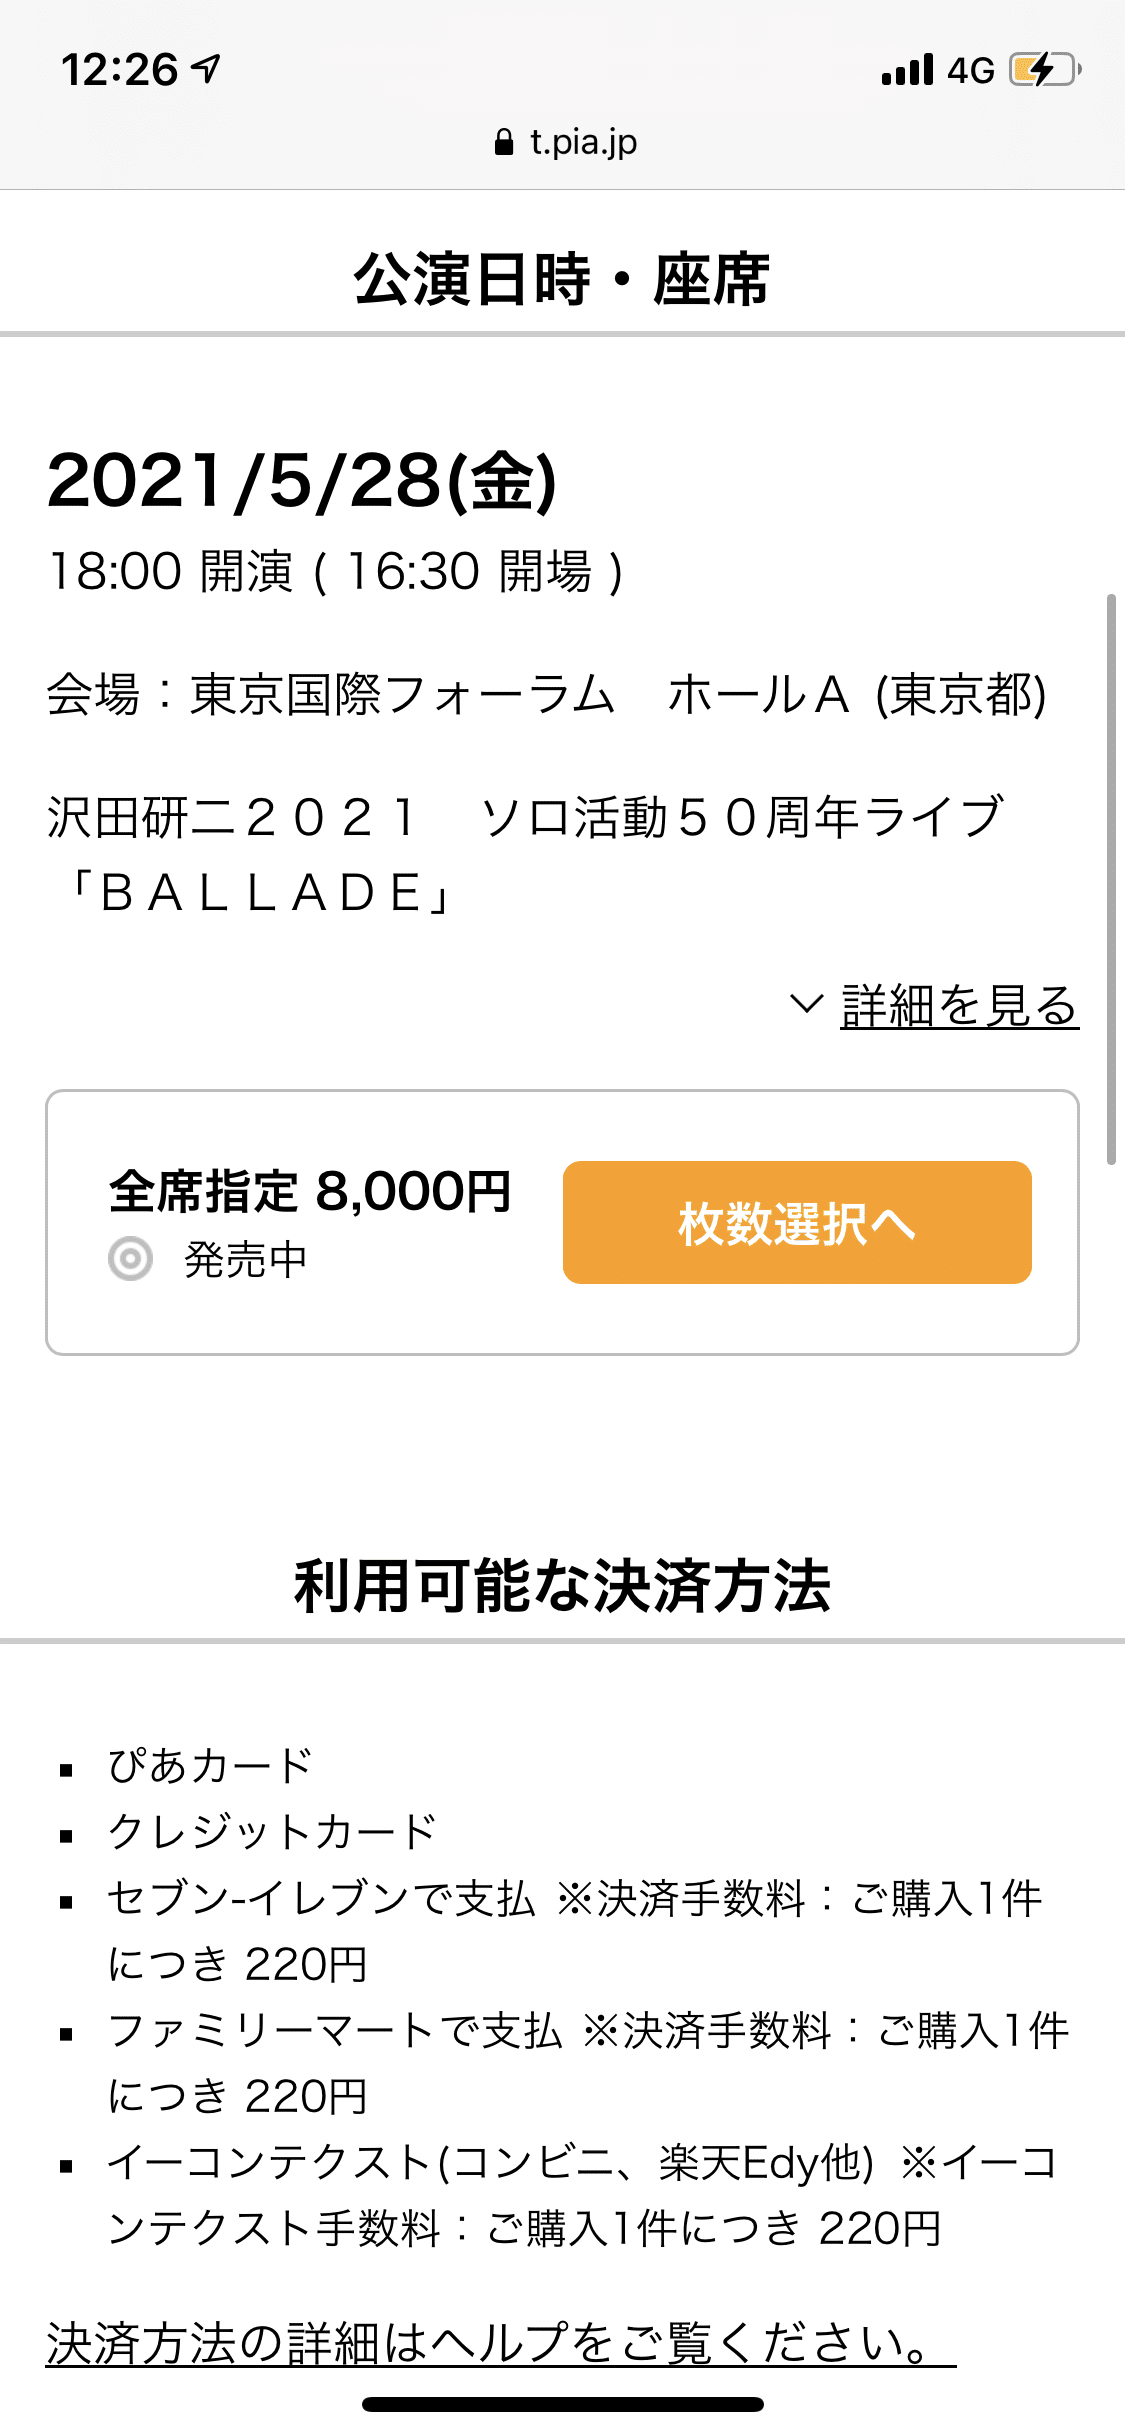 沢田研二 21年ライブツアー Ballade チケット現状 秋山大輔 Note